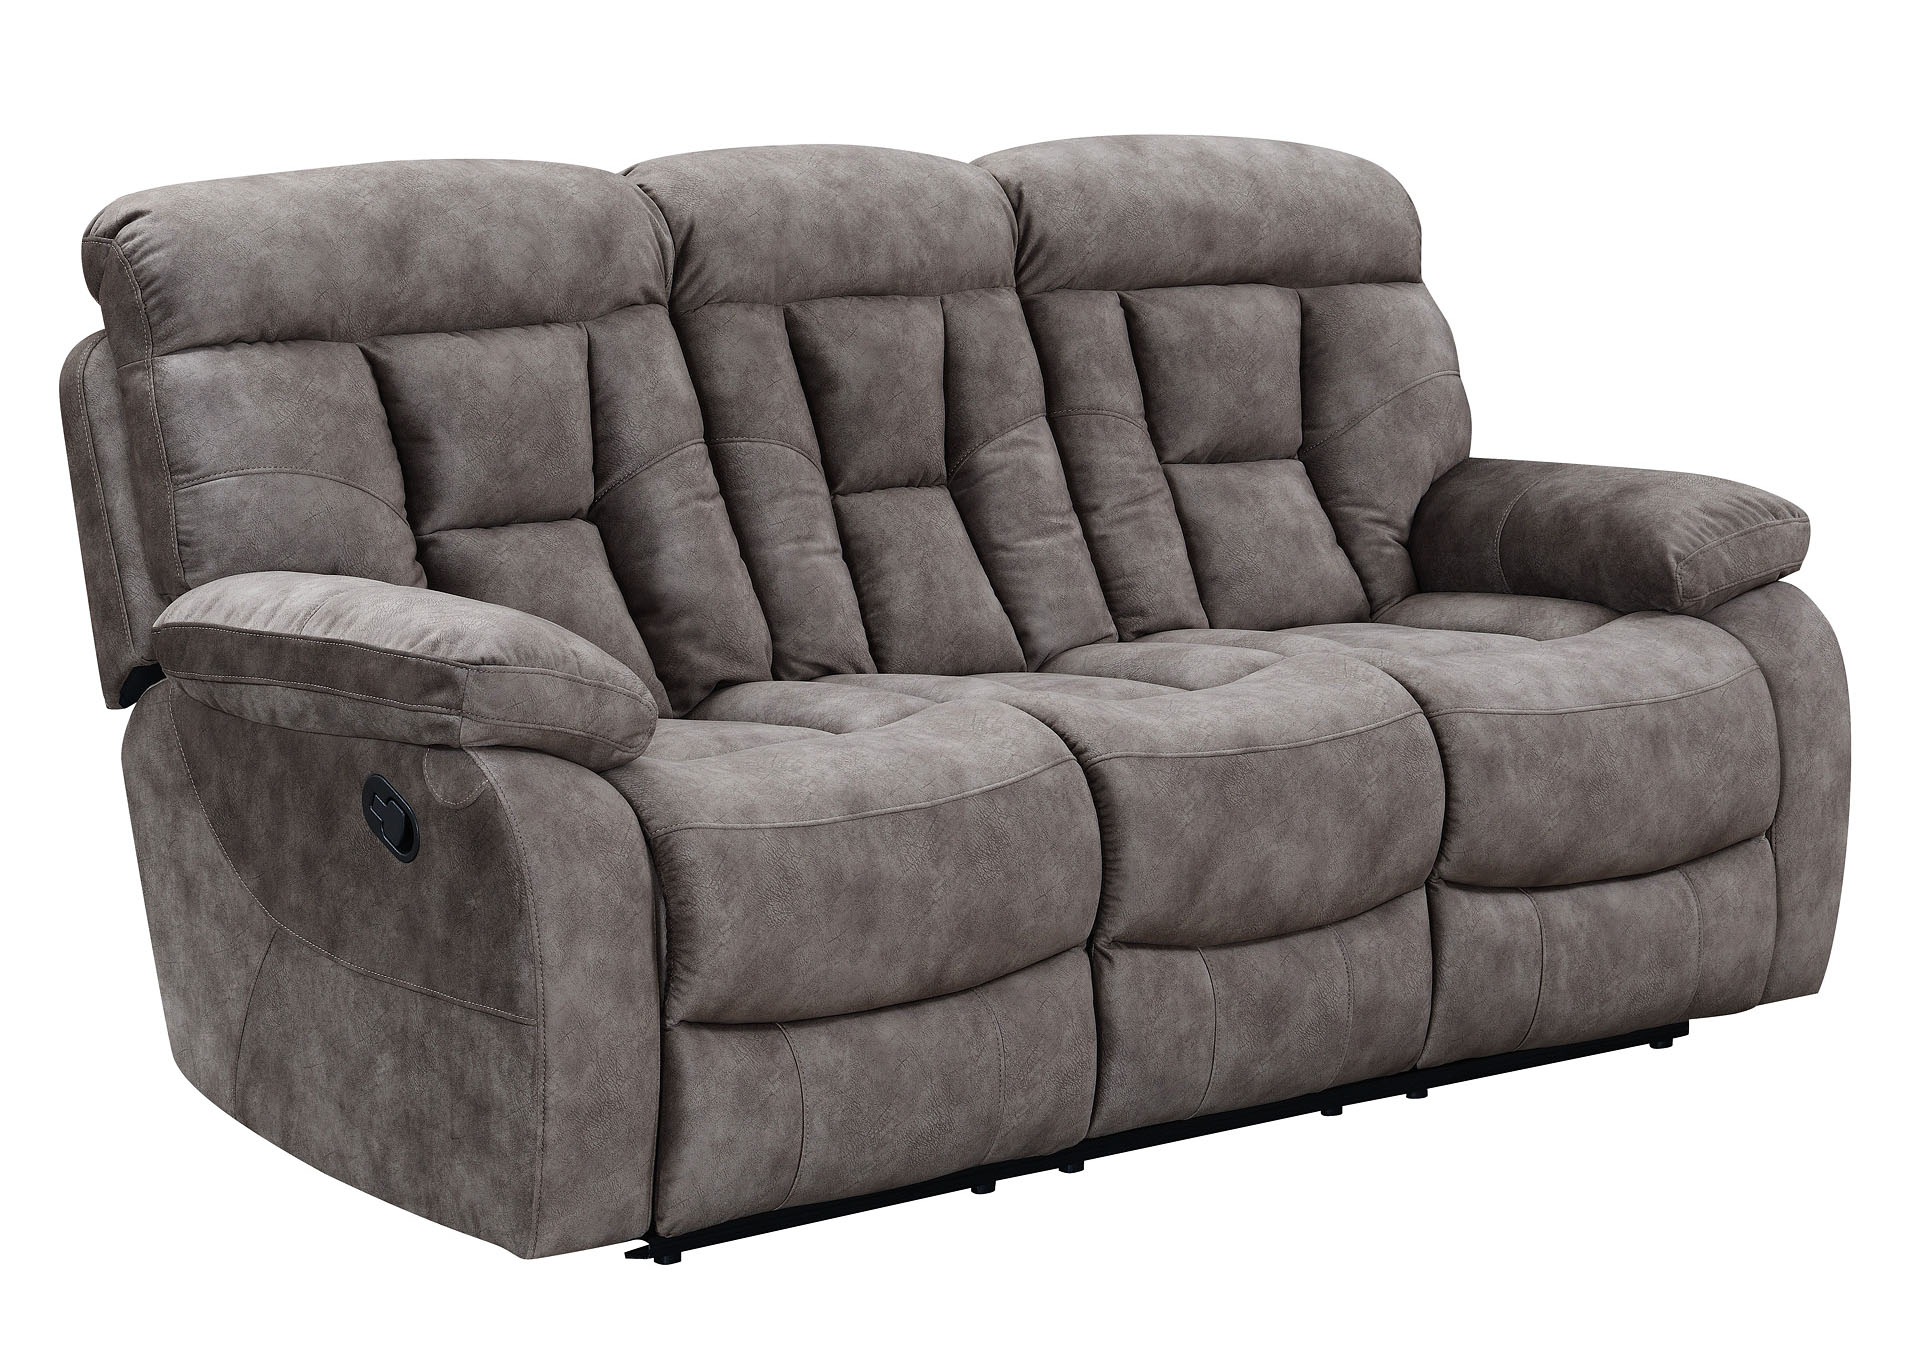 Bogata Grey Recliner Sofa,Steve Silver